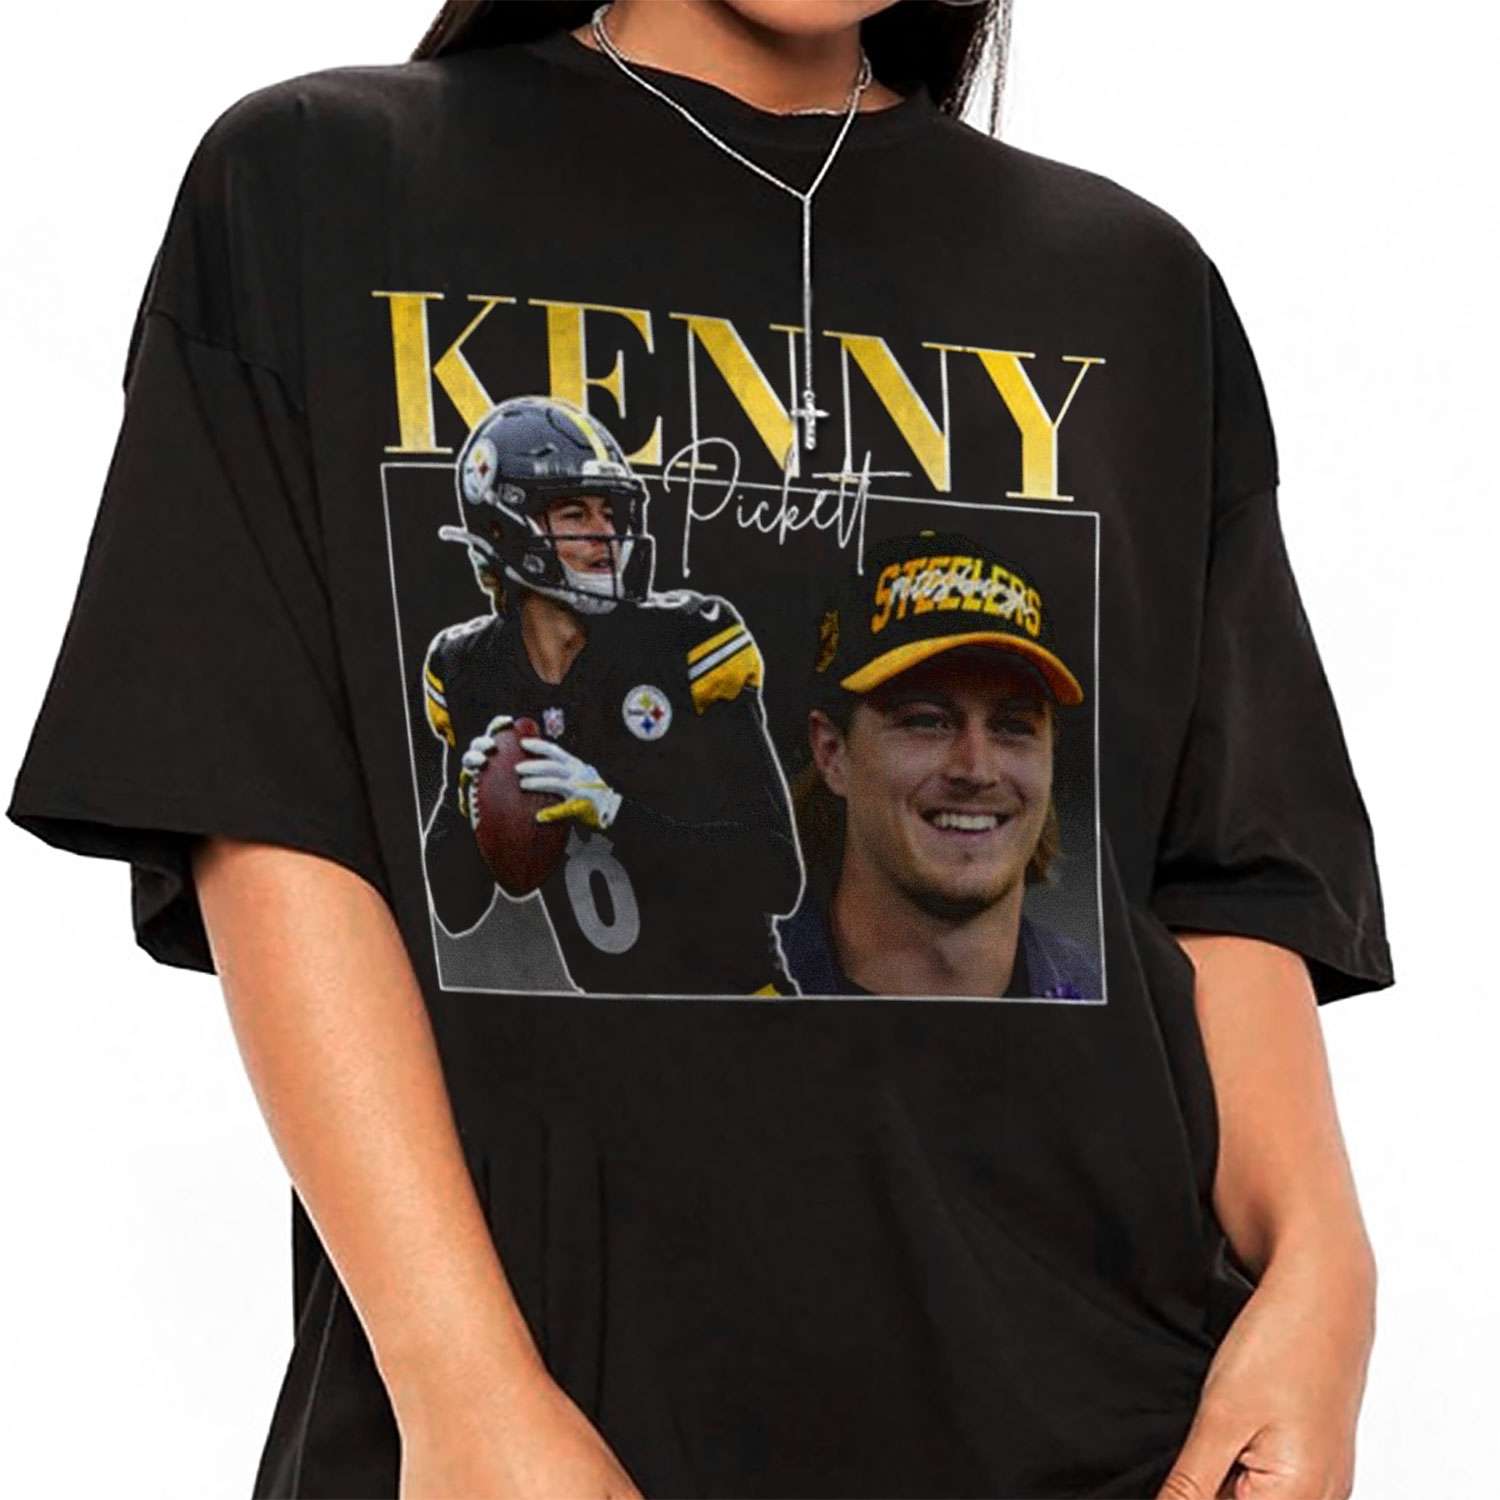 kenny pickett shirt